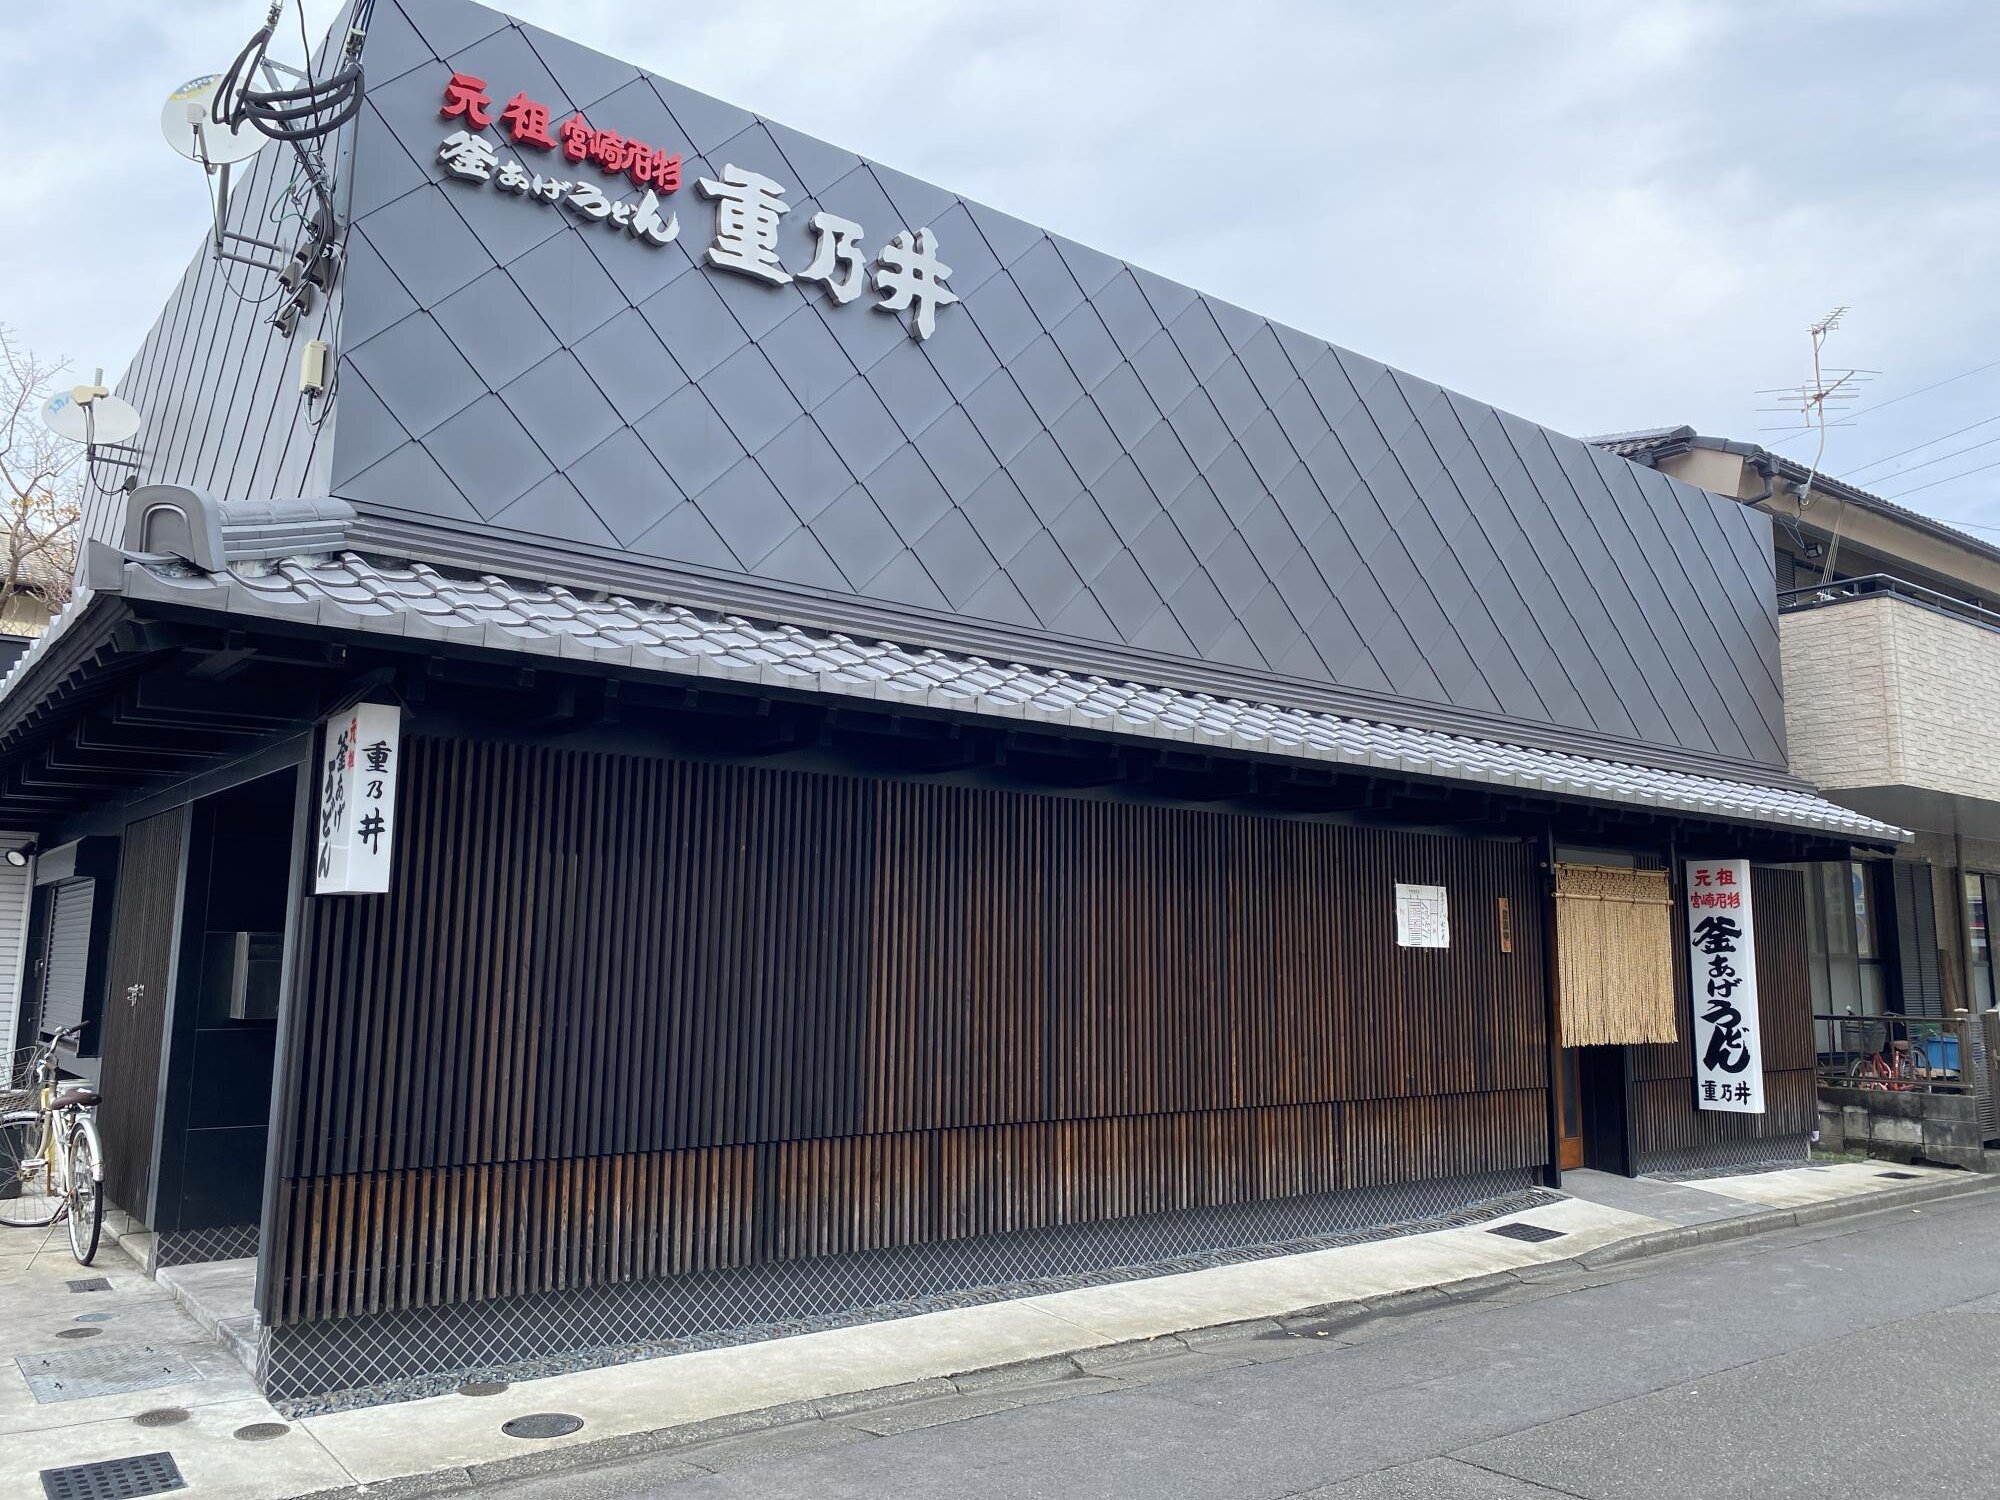 老舗店「釜あげうどん 重乃井」は、2019年に旧店舗をリニューアルオープンして外観内装が綺麗です。